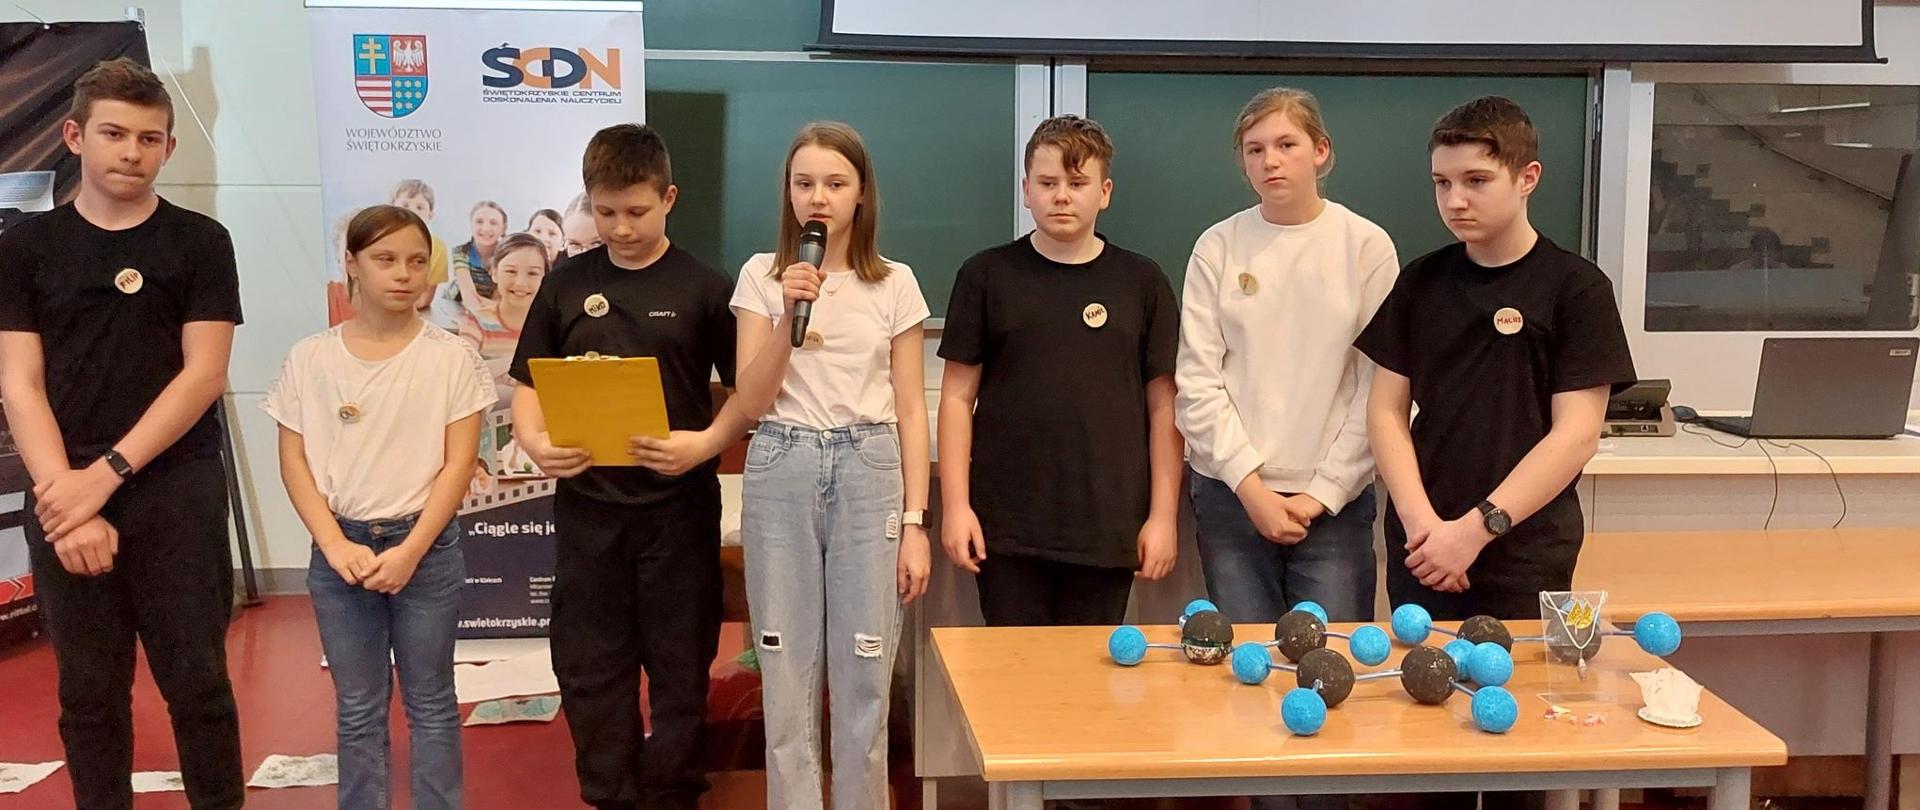 Uczniowie Szkoły Podstawowej w Morawicy podczas prezentowania zrealizowanego projektu